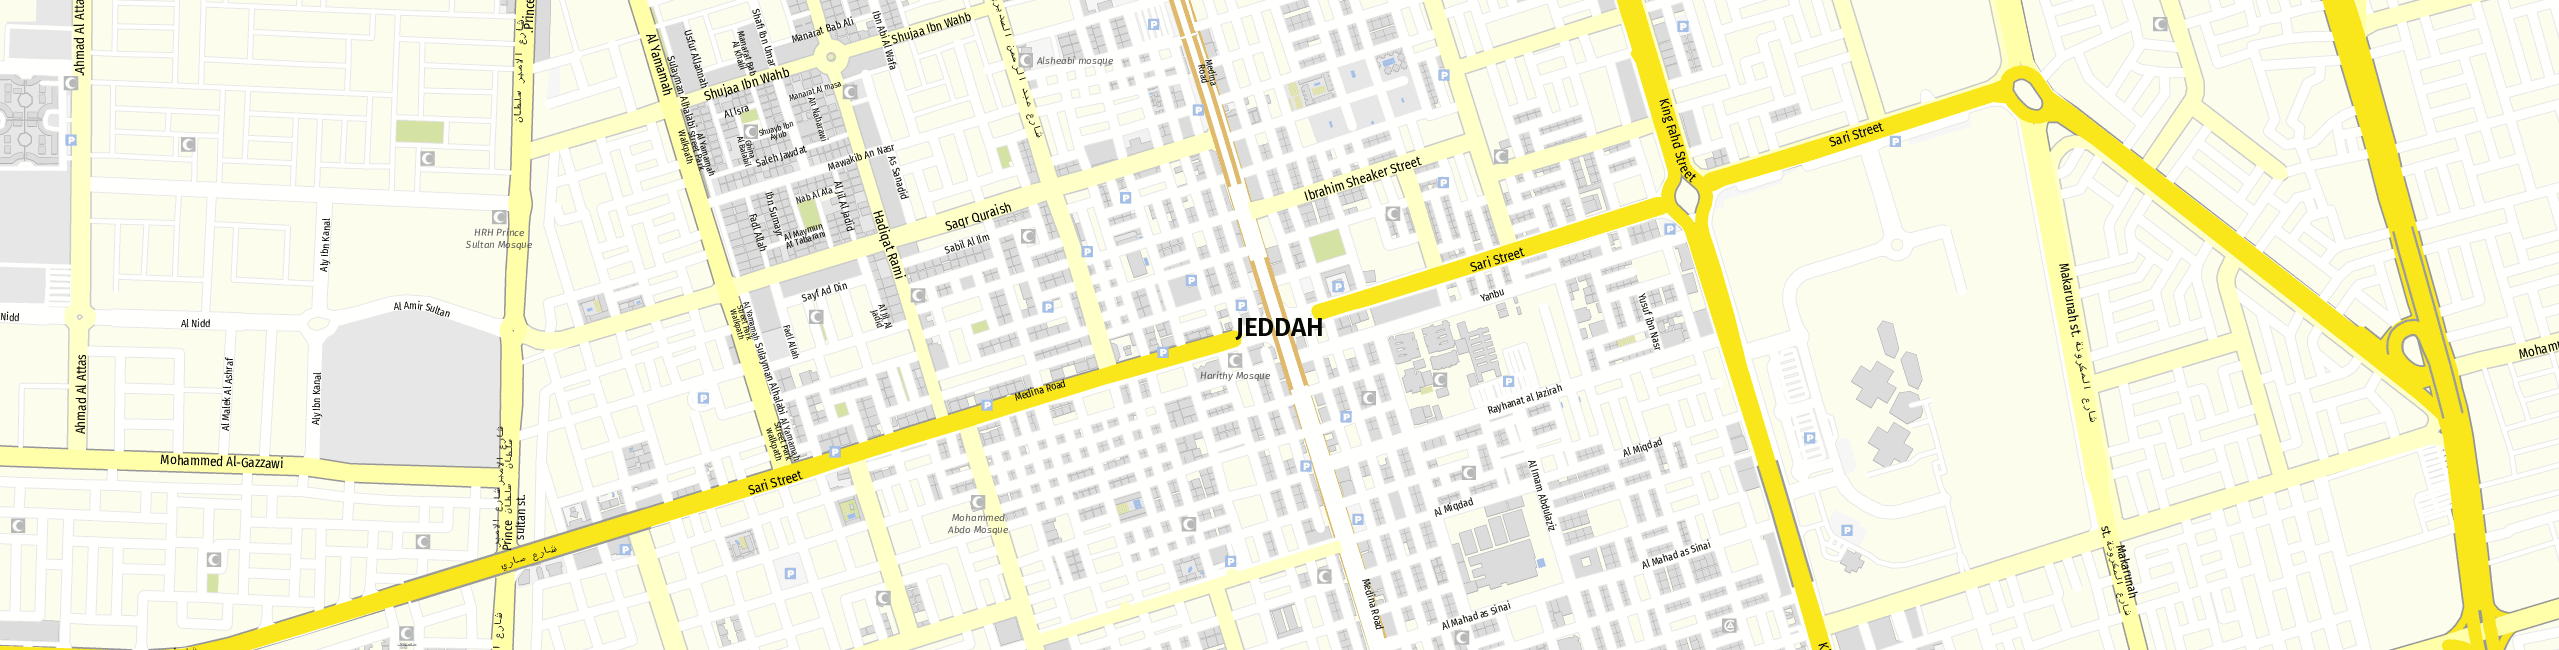 Stadtplan Jeddah zum Downloaden.